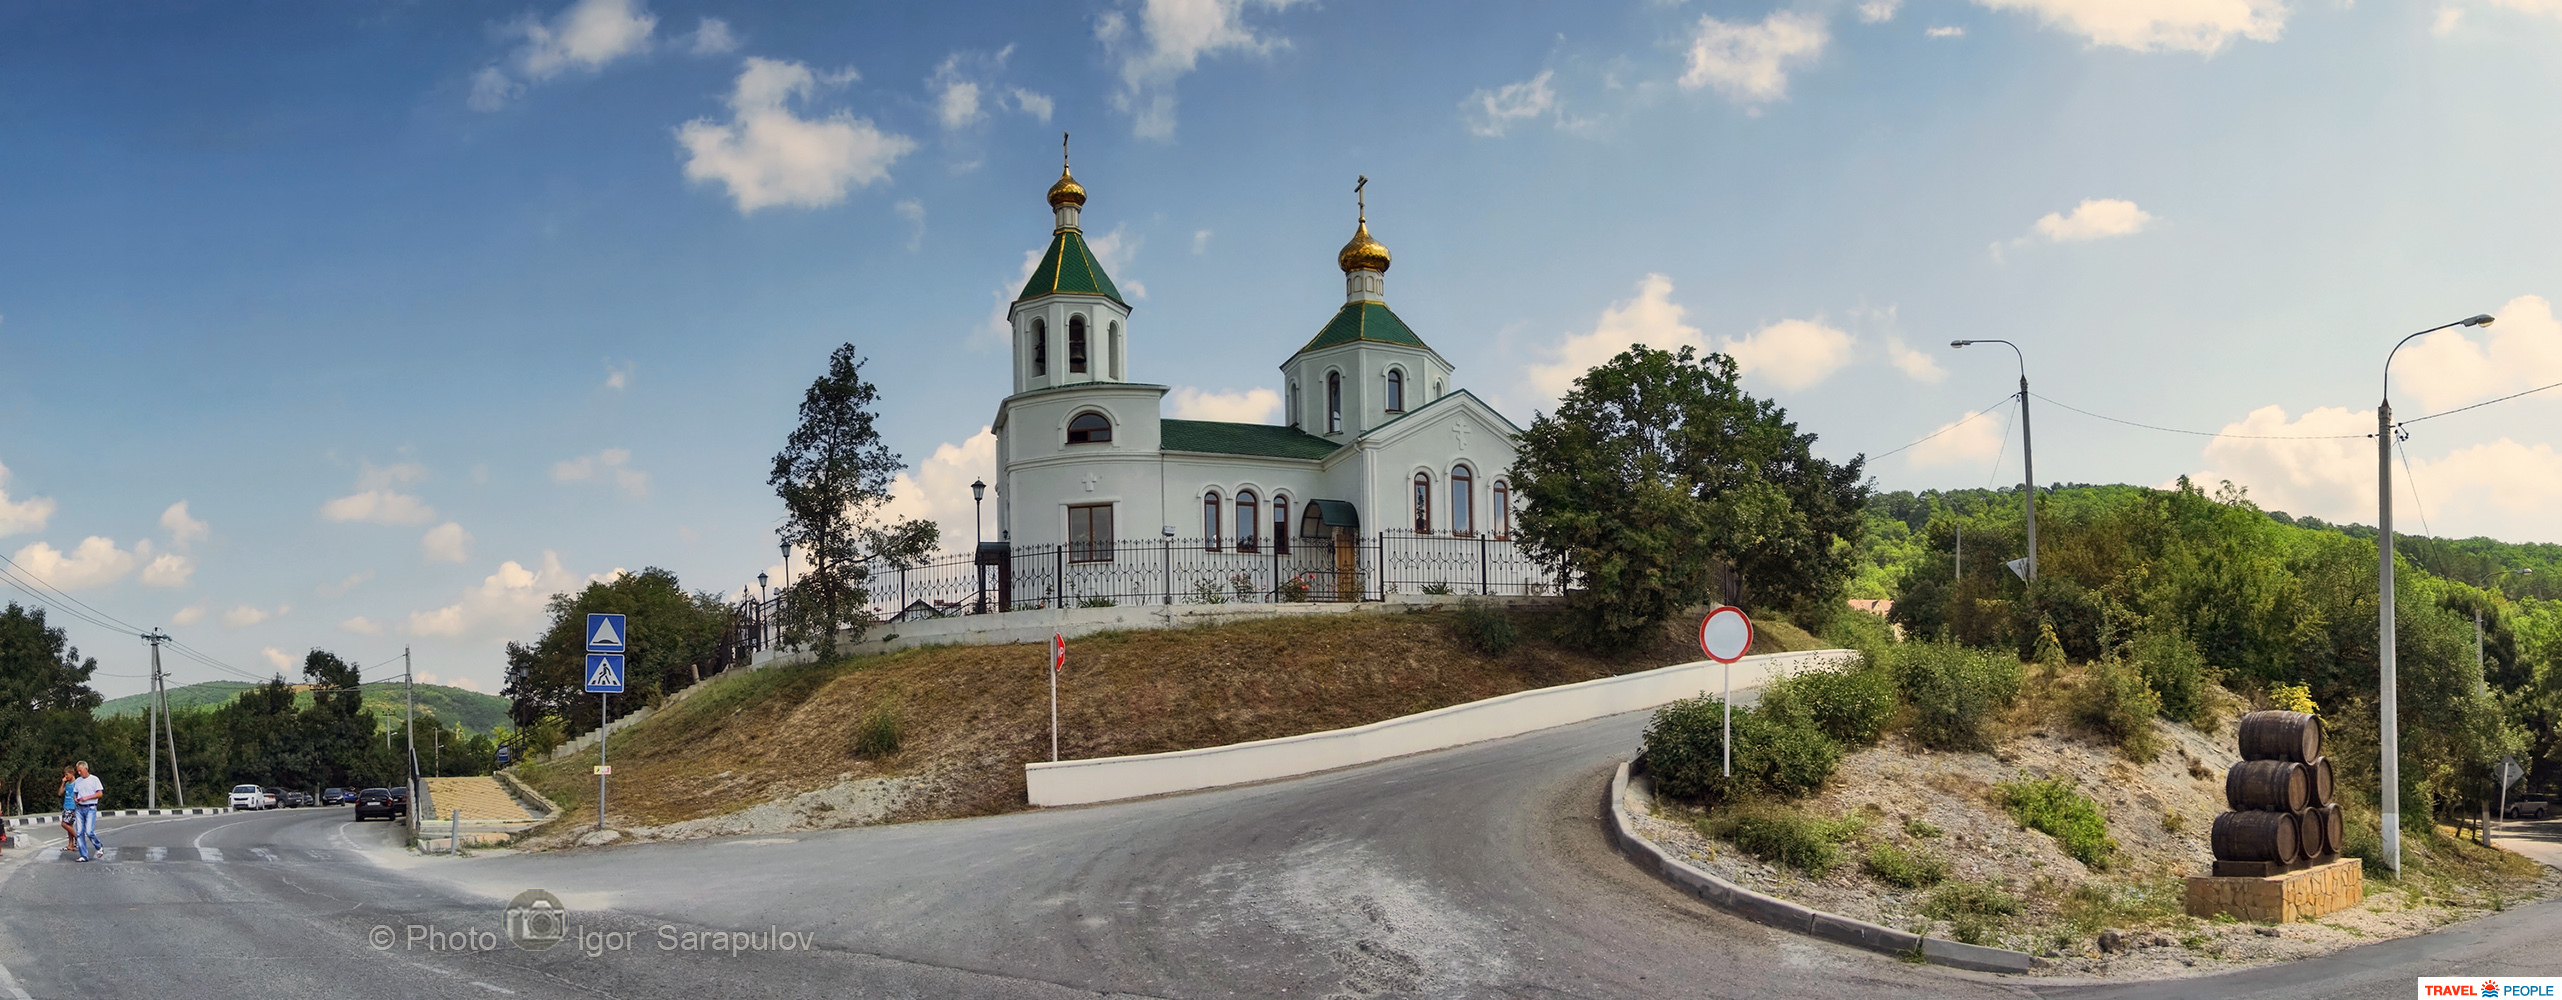 Храм Ксении Петербургской в Абрау-Дюрсо